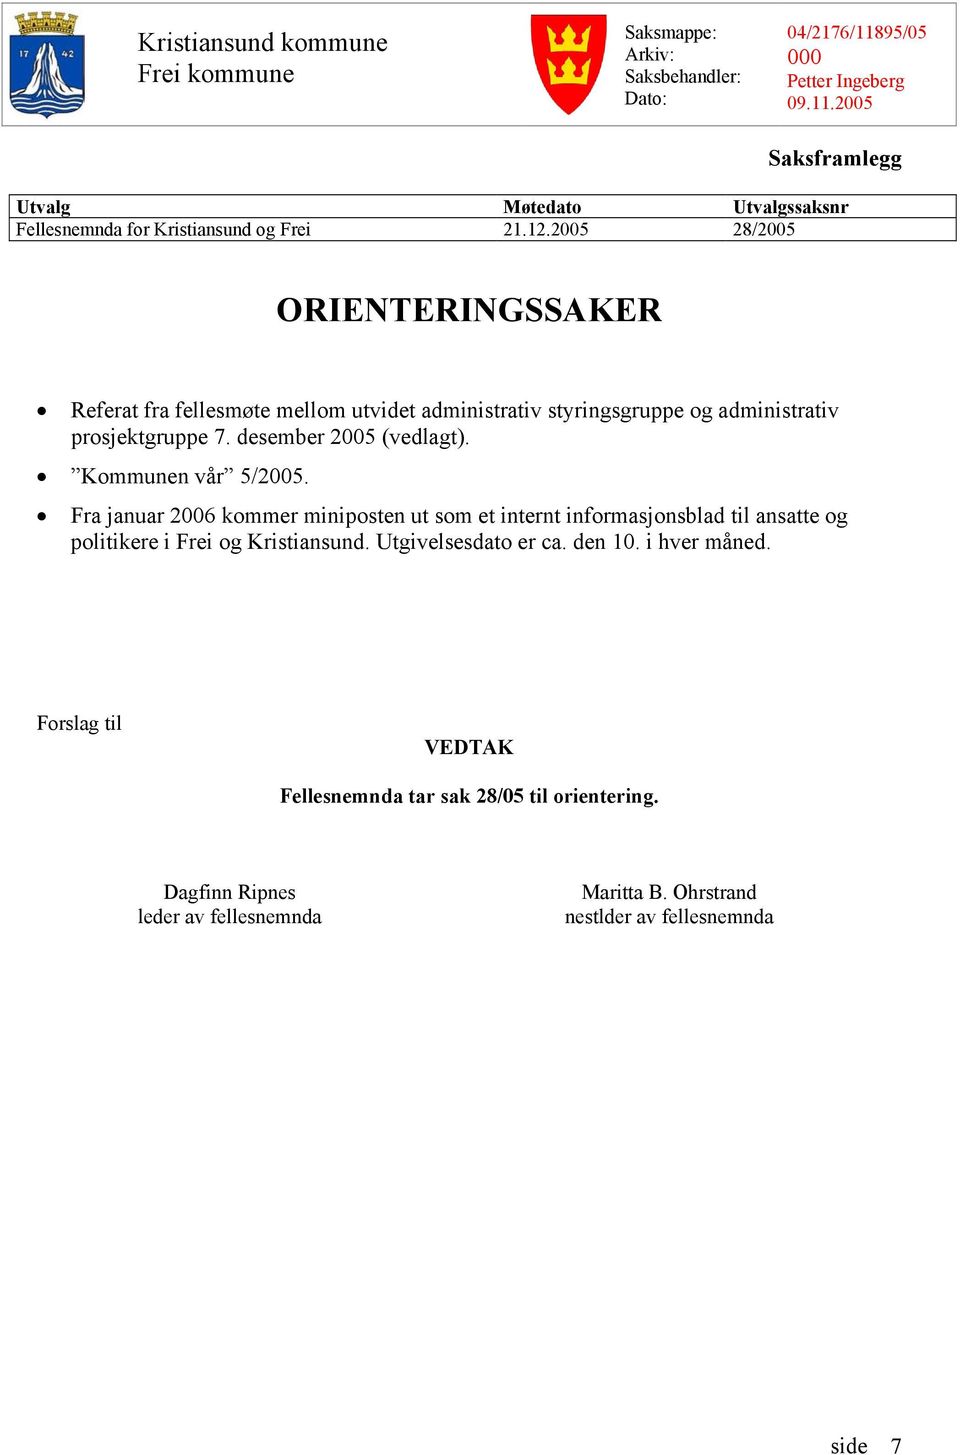 Kommunen vår 5/2005. Fra januar 2006 kommer miniposten ut som et internt informasjonsblad til ansatte og politikere i Frei og Kristiansund. Utgivelsesdato er ca. den 10.